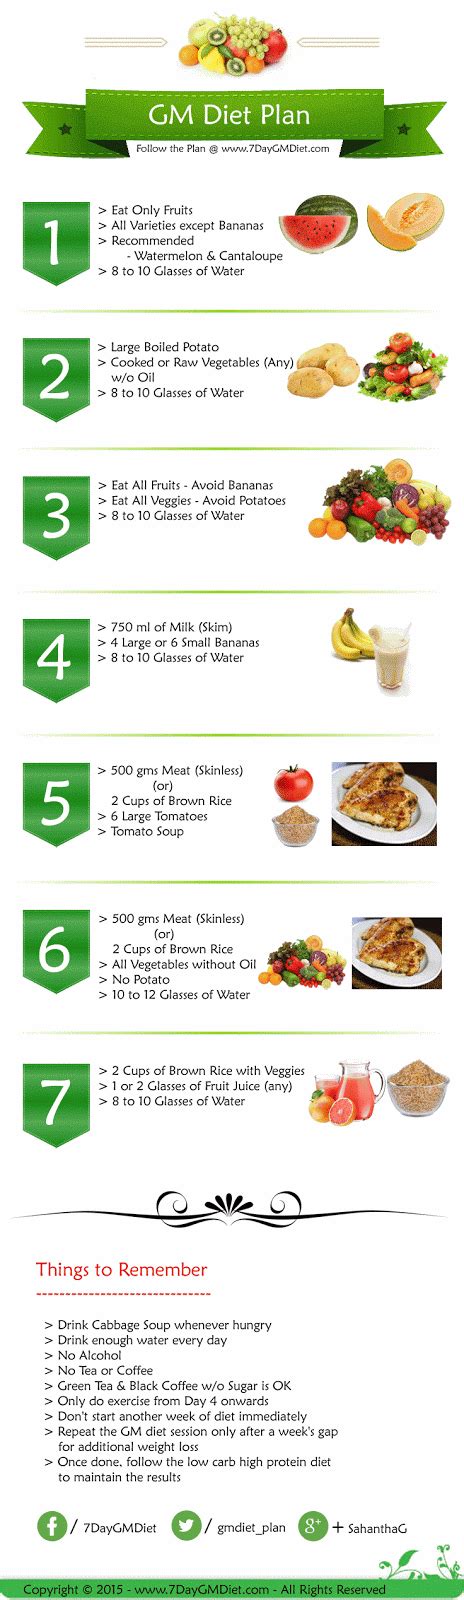 gm diet menu tips  lose weight fast   week